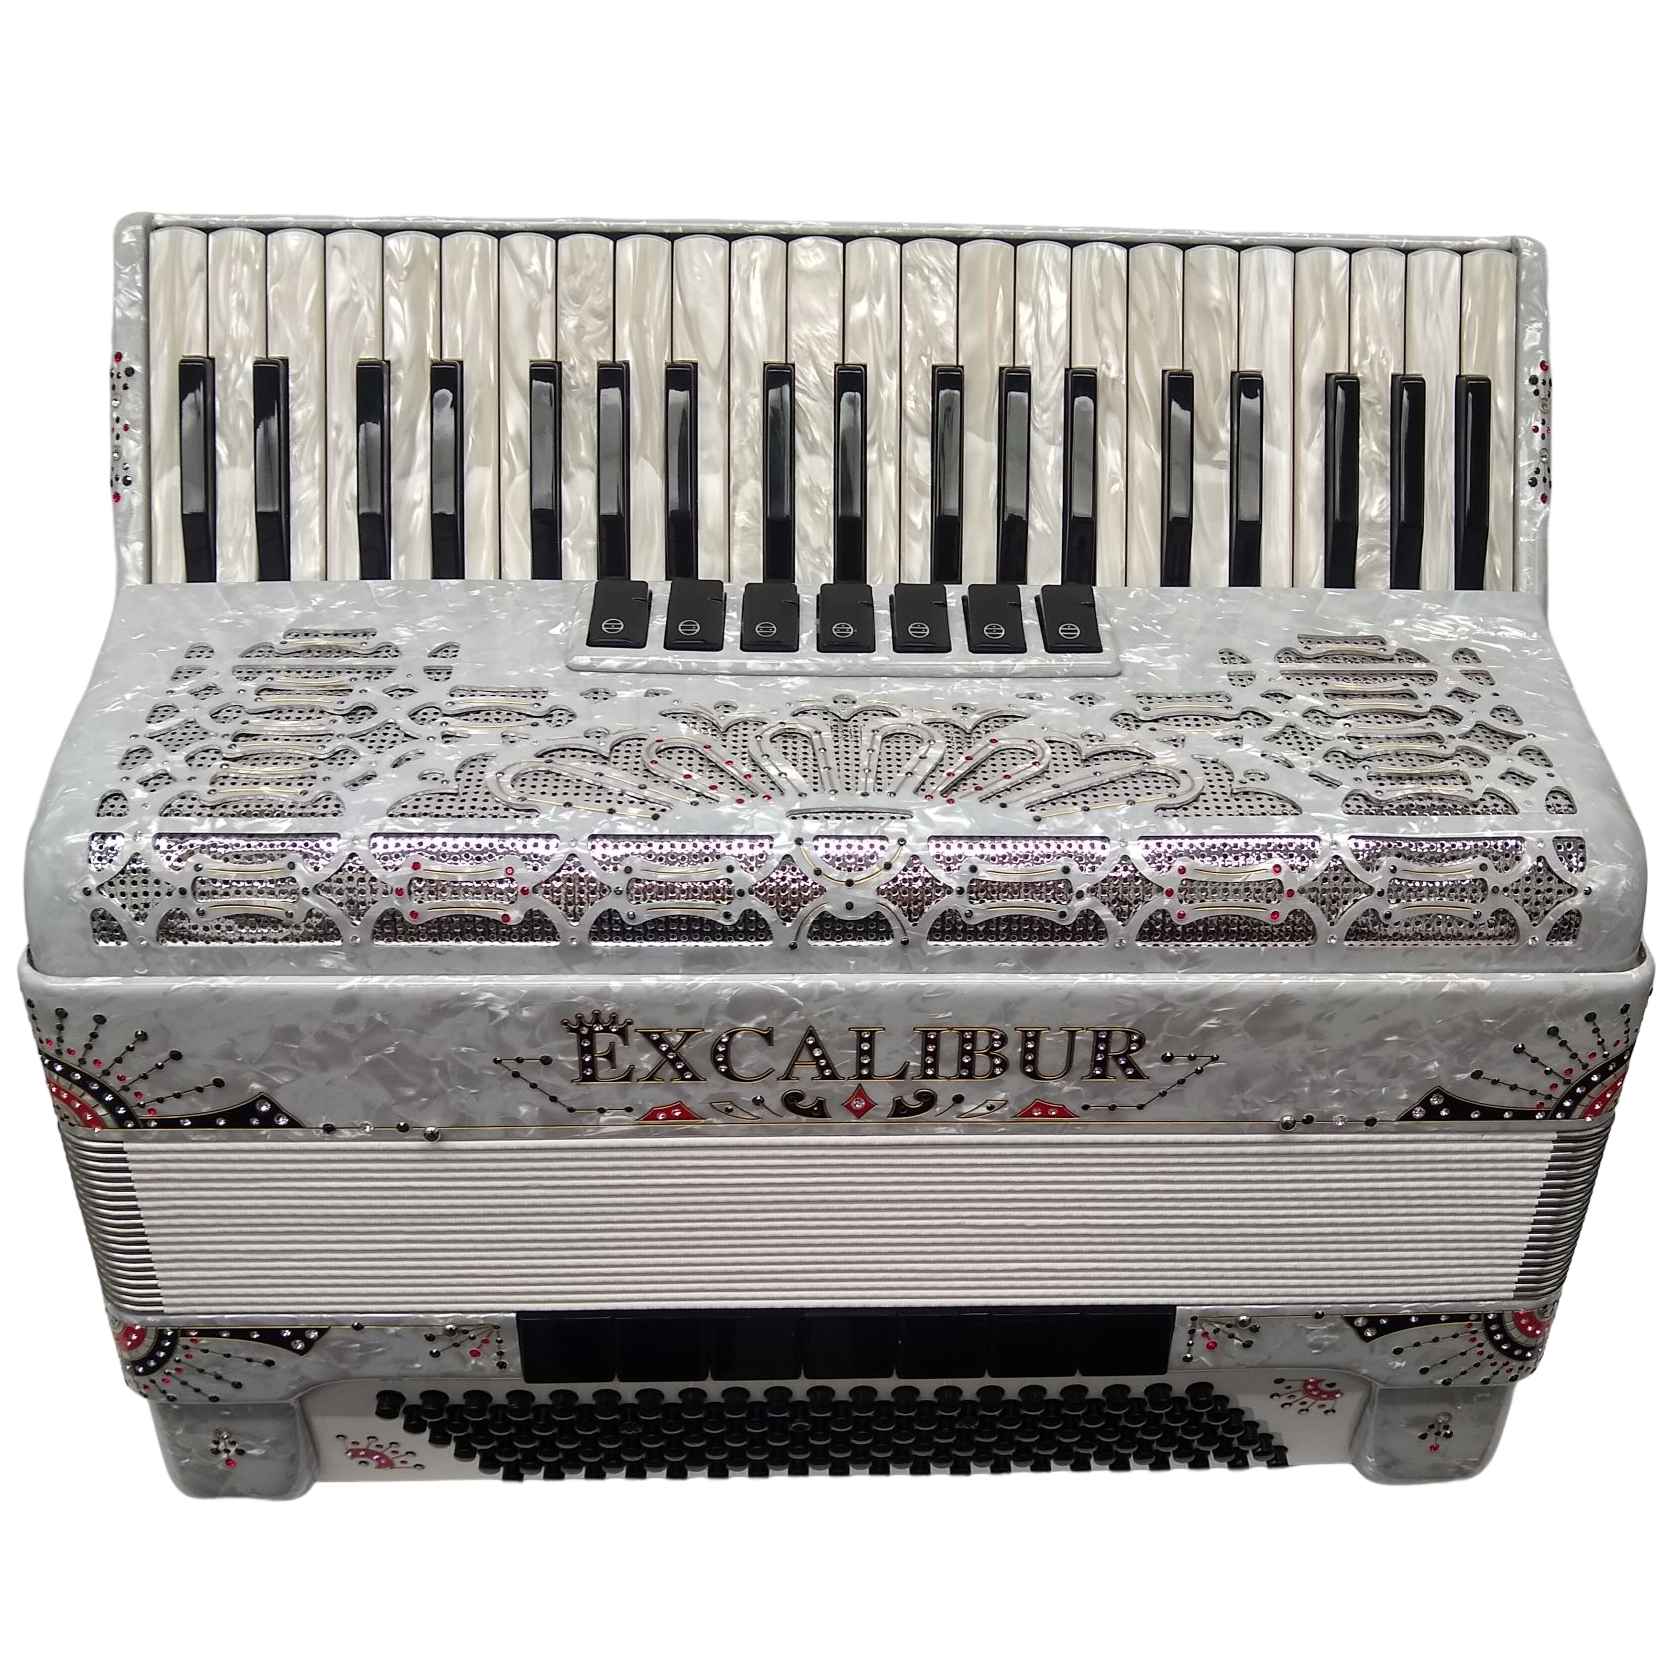 Excalibur Crown C3 Piano Accordion